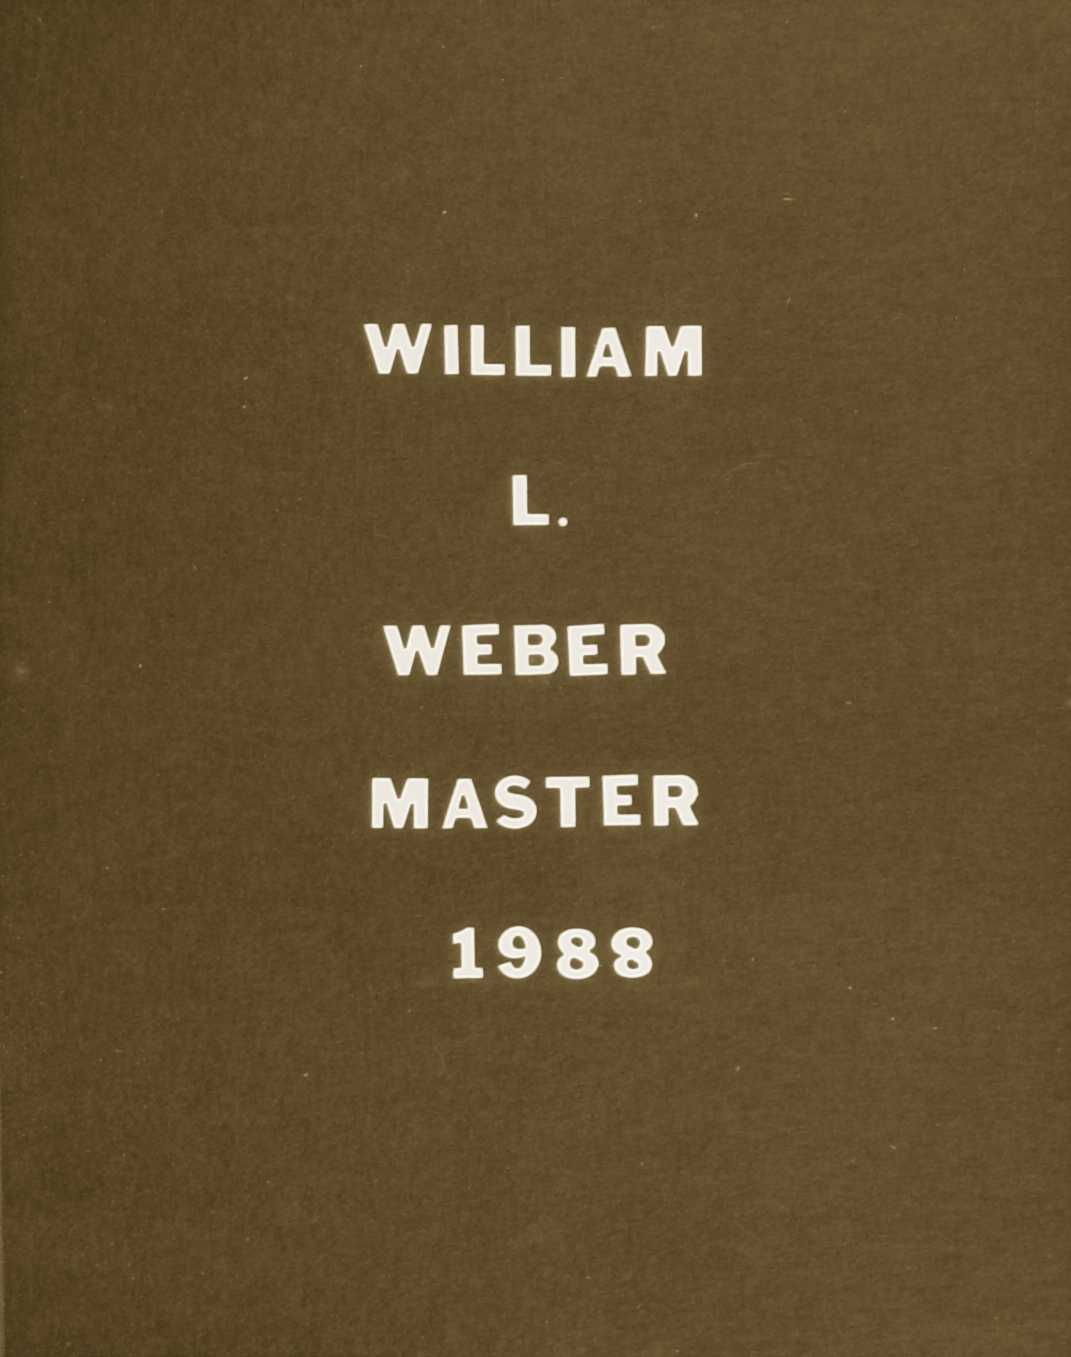 William L. Weber, 1988